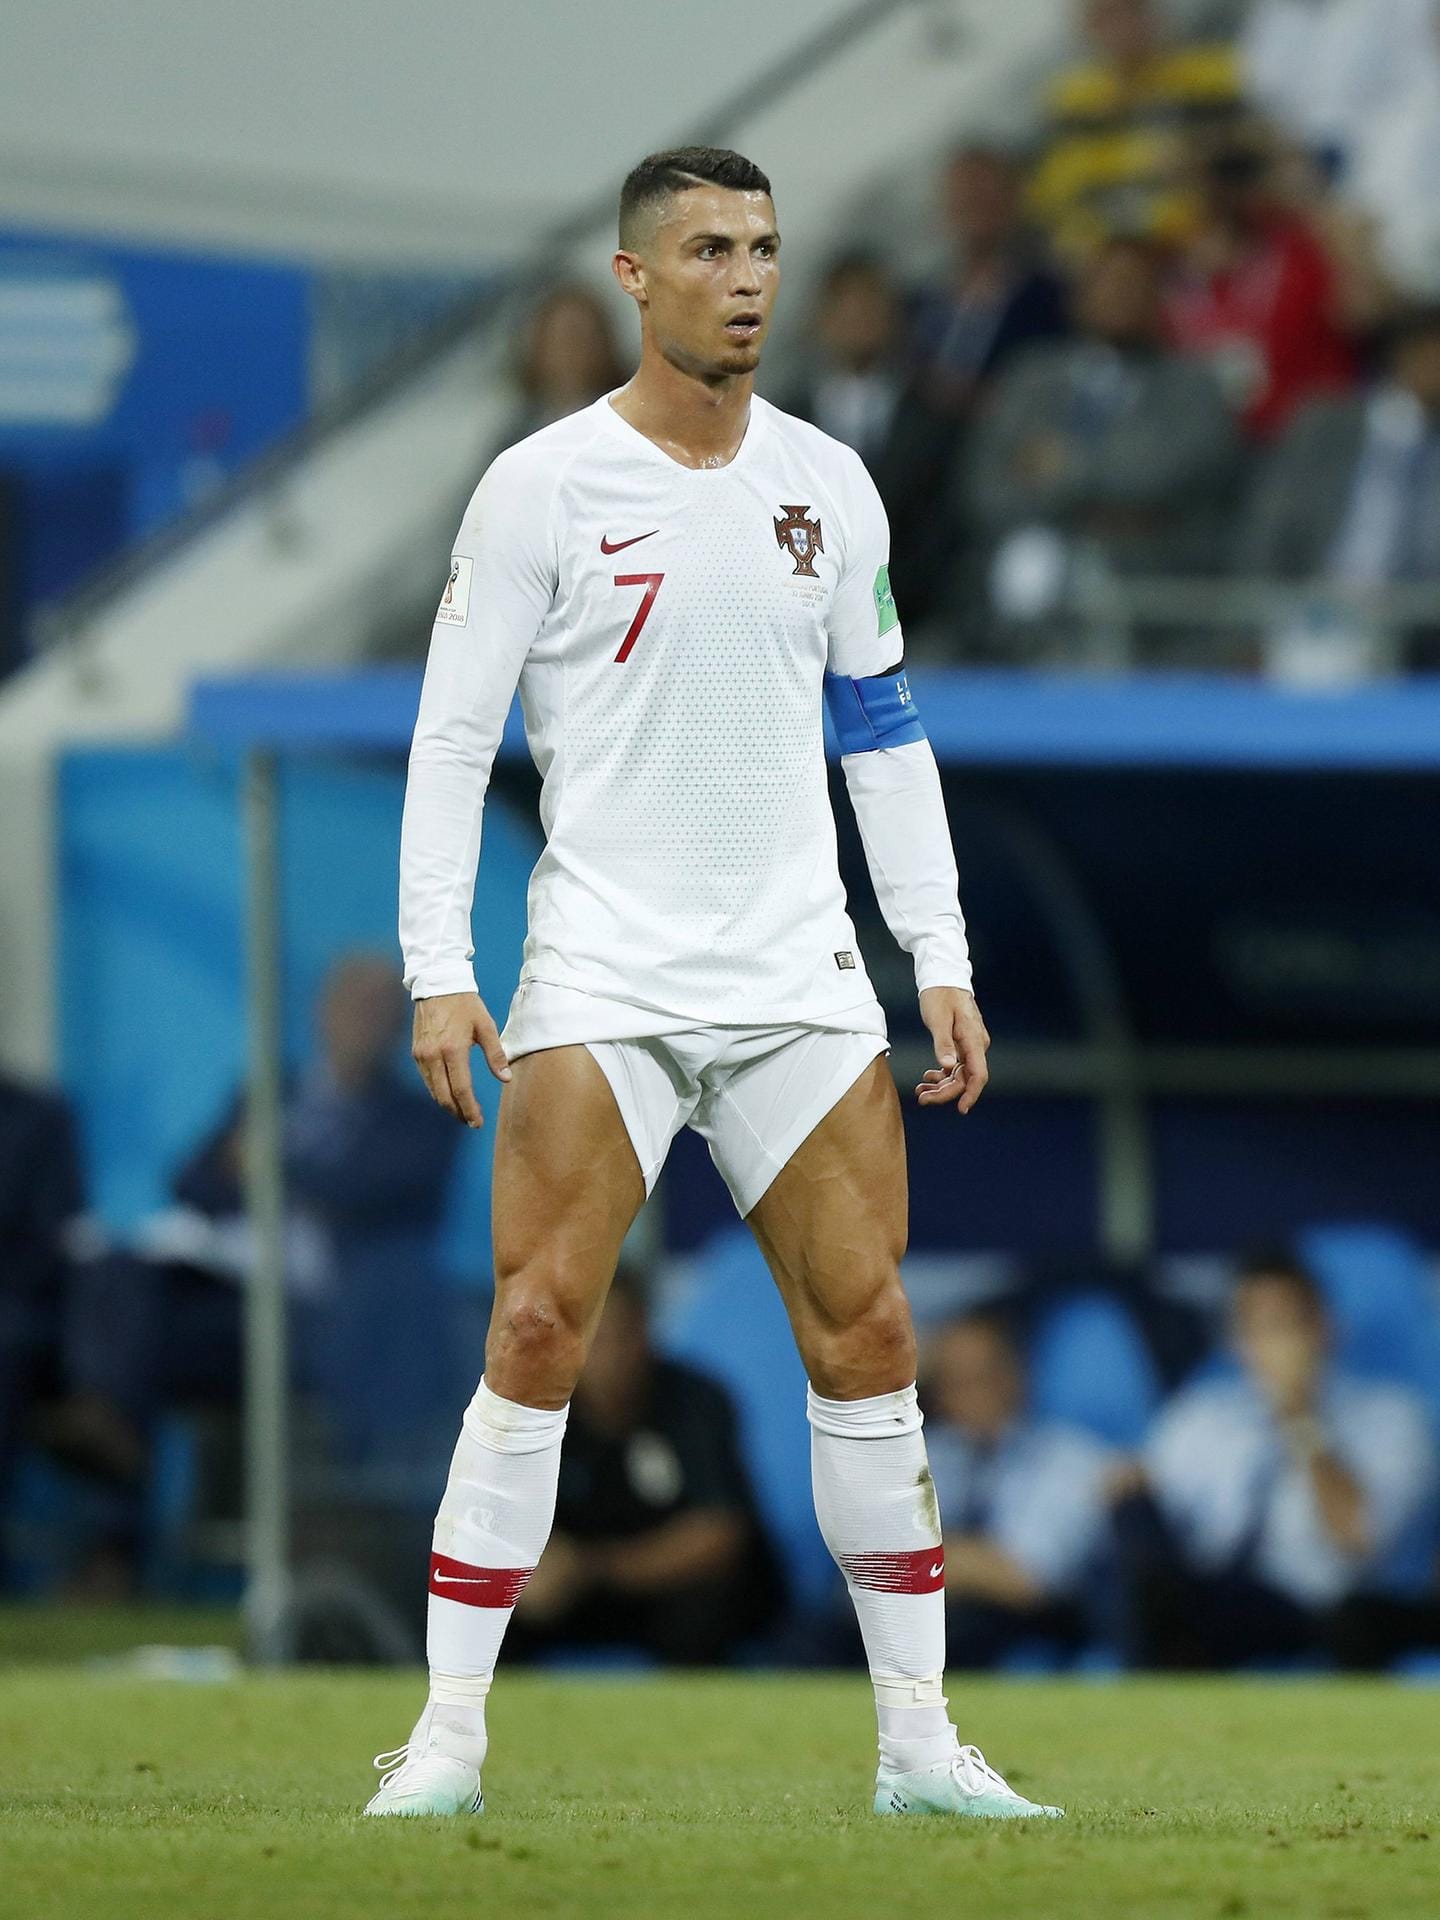 Ronaldo und seine Hosen-Pose: Beim Achtelfinale Uruguay gegen Portugal glänzte der 33-Jährige beim Freistoß nicht durch sein fußballerisches Können, sondern durch seine weltberühmte Pose. Die Mauer konnte er dabei nicht überwinden.